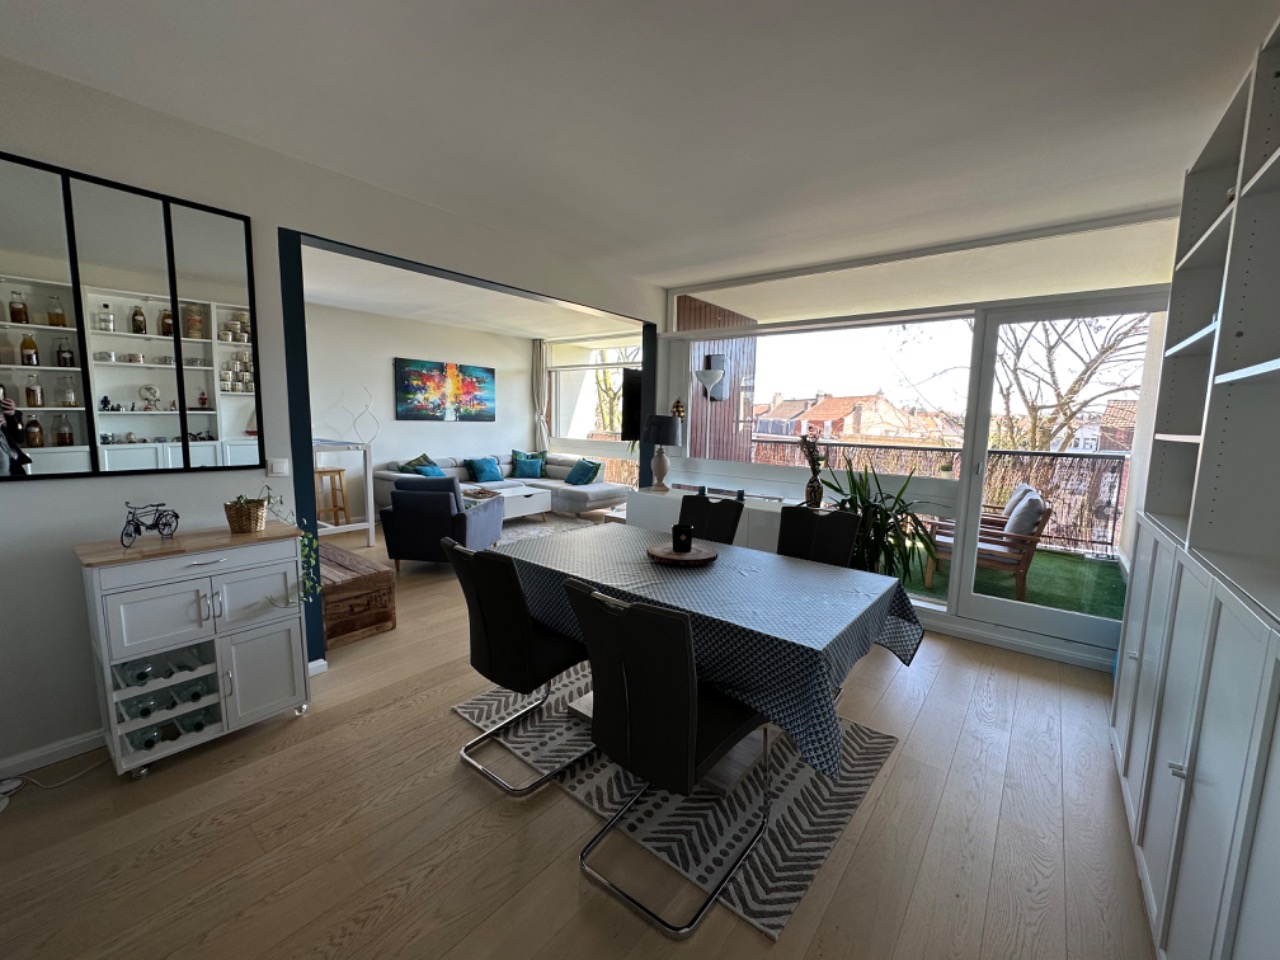 Vente appartement 59000 Lille - Type 4 Lille avec balcon et garage